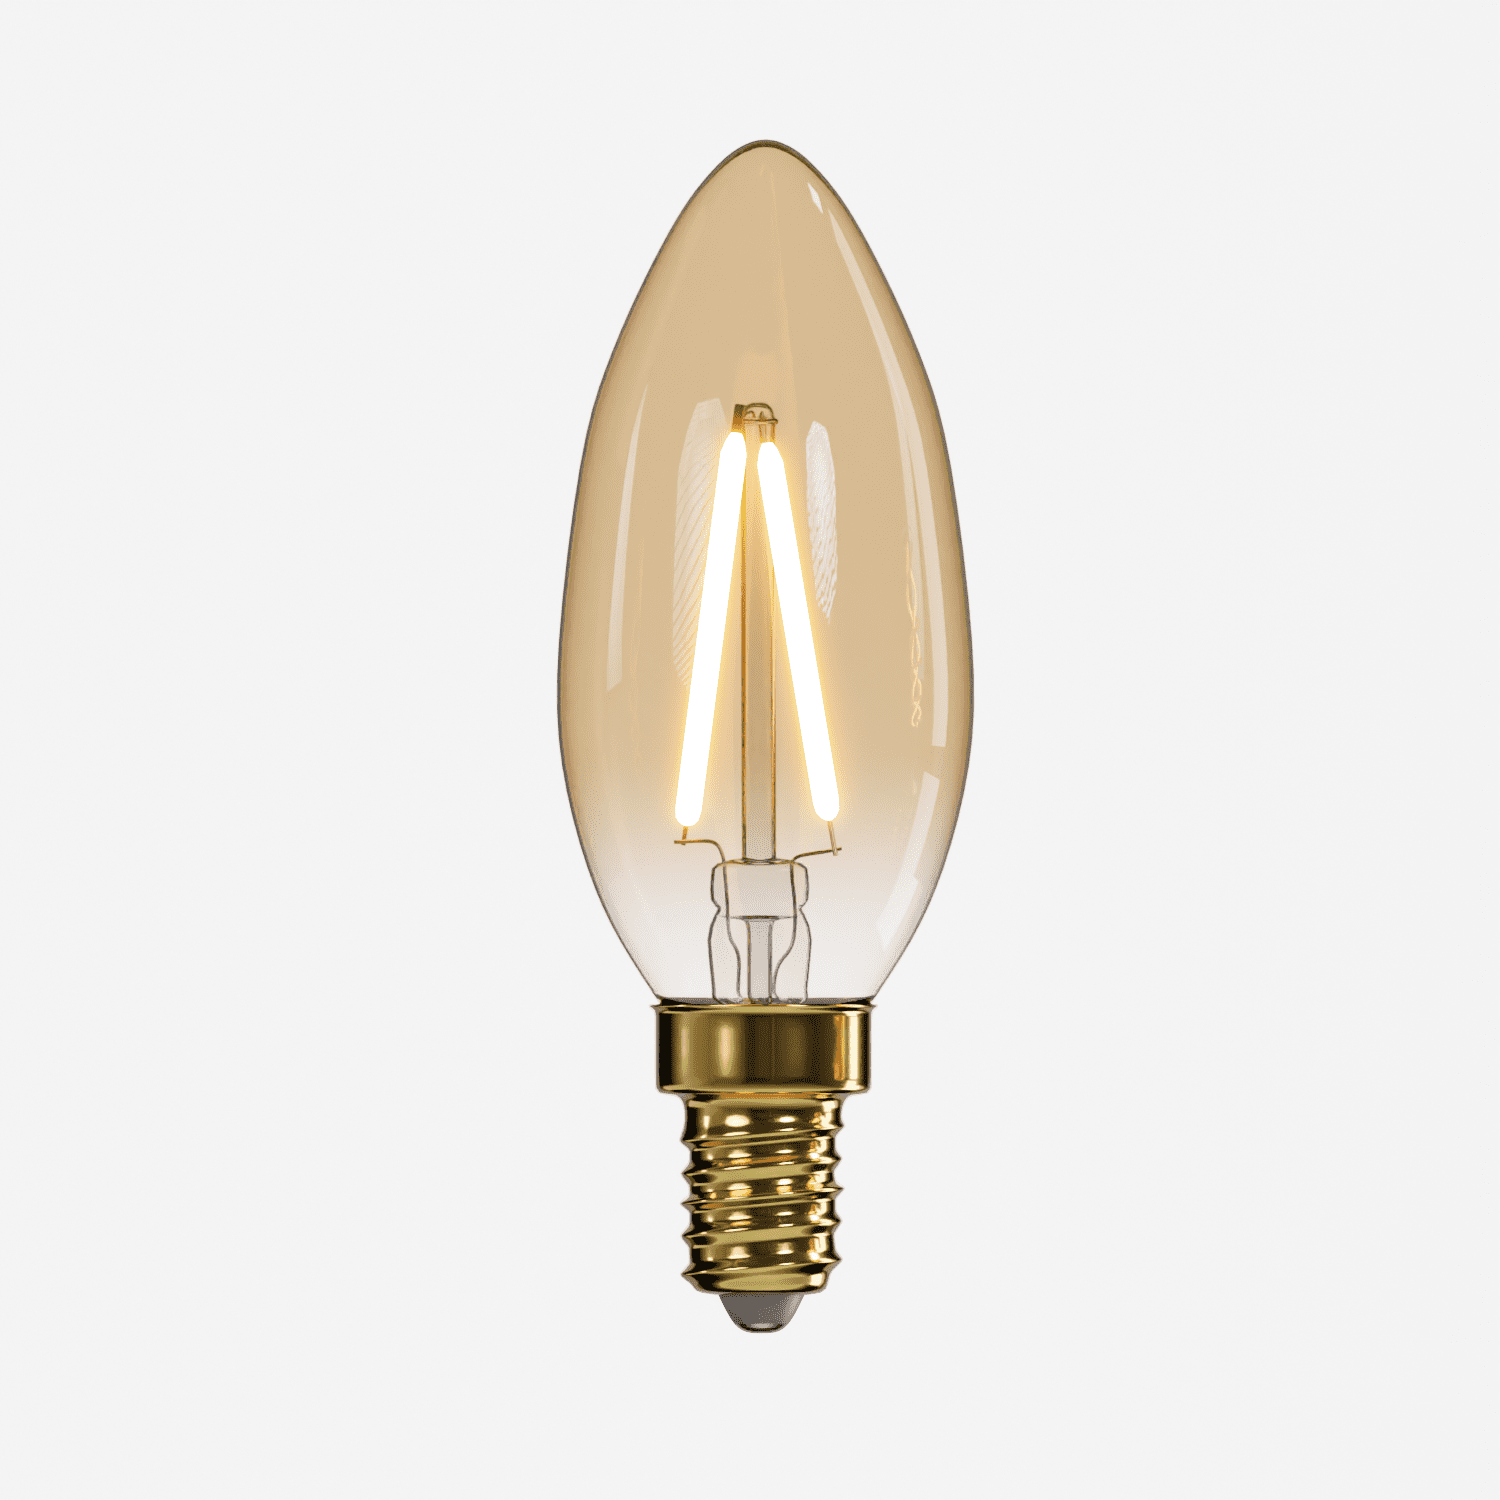 Lampadina LED a filamento loop, forma a candela, aspetto vintage